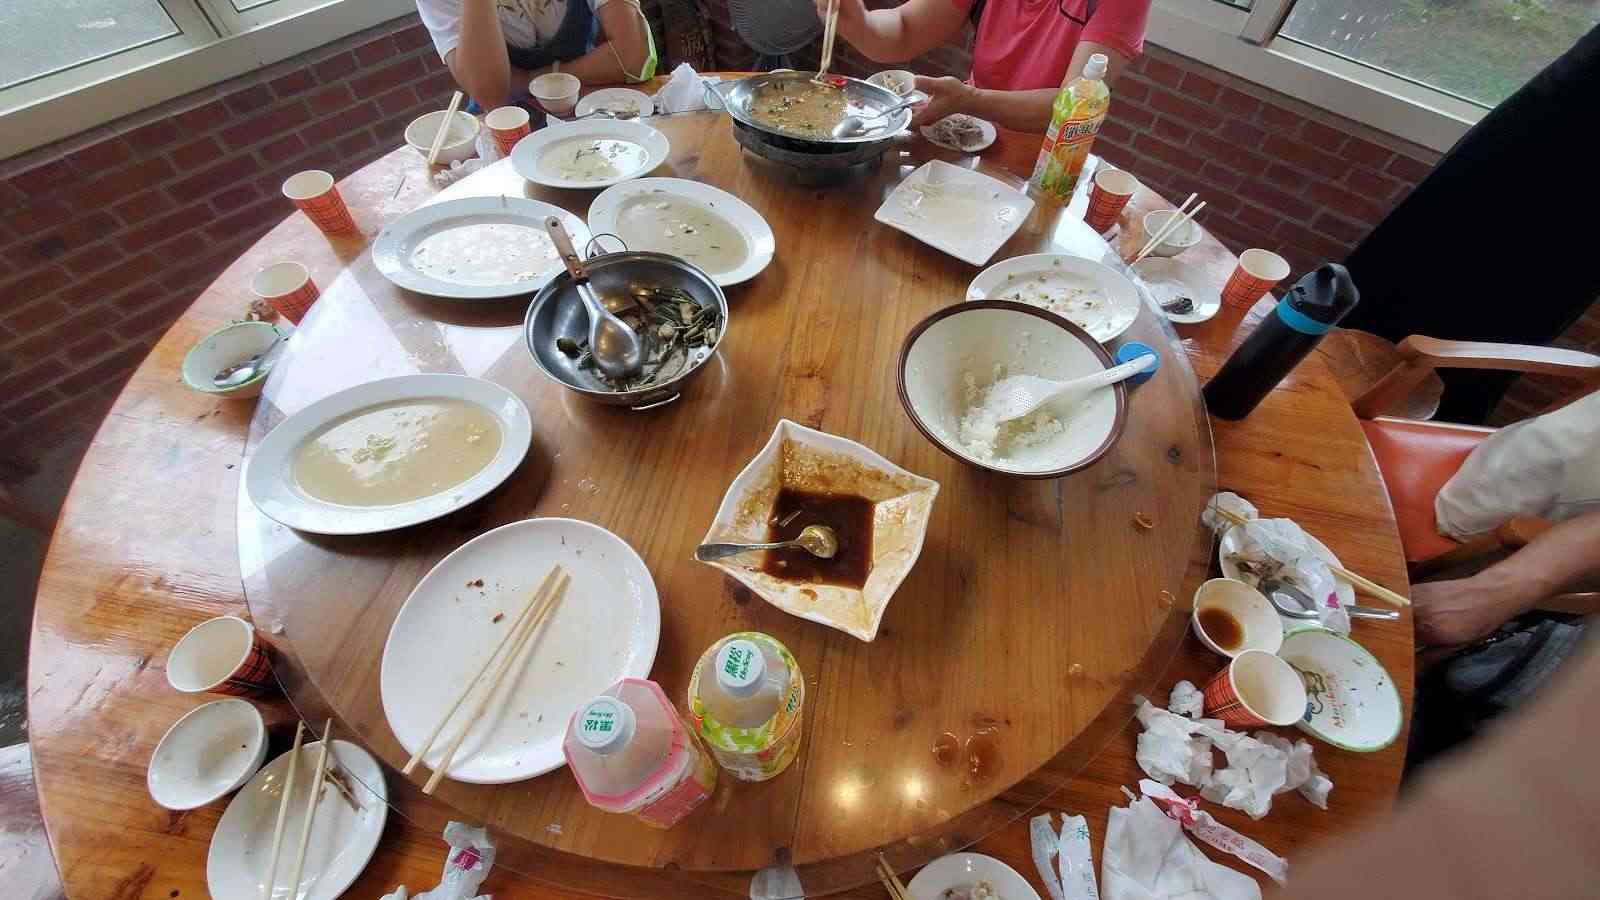 溪頭翠谷餐廳/ 攝影者: 陳叉叉

(由第三方資訊提供)